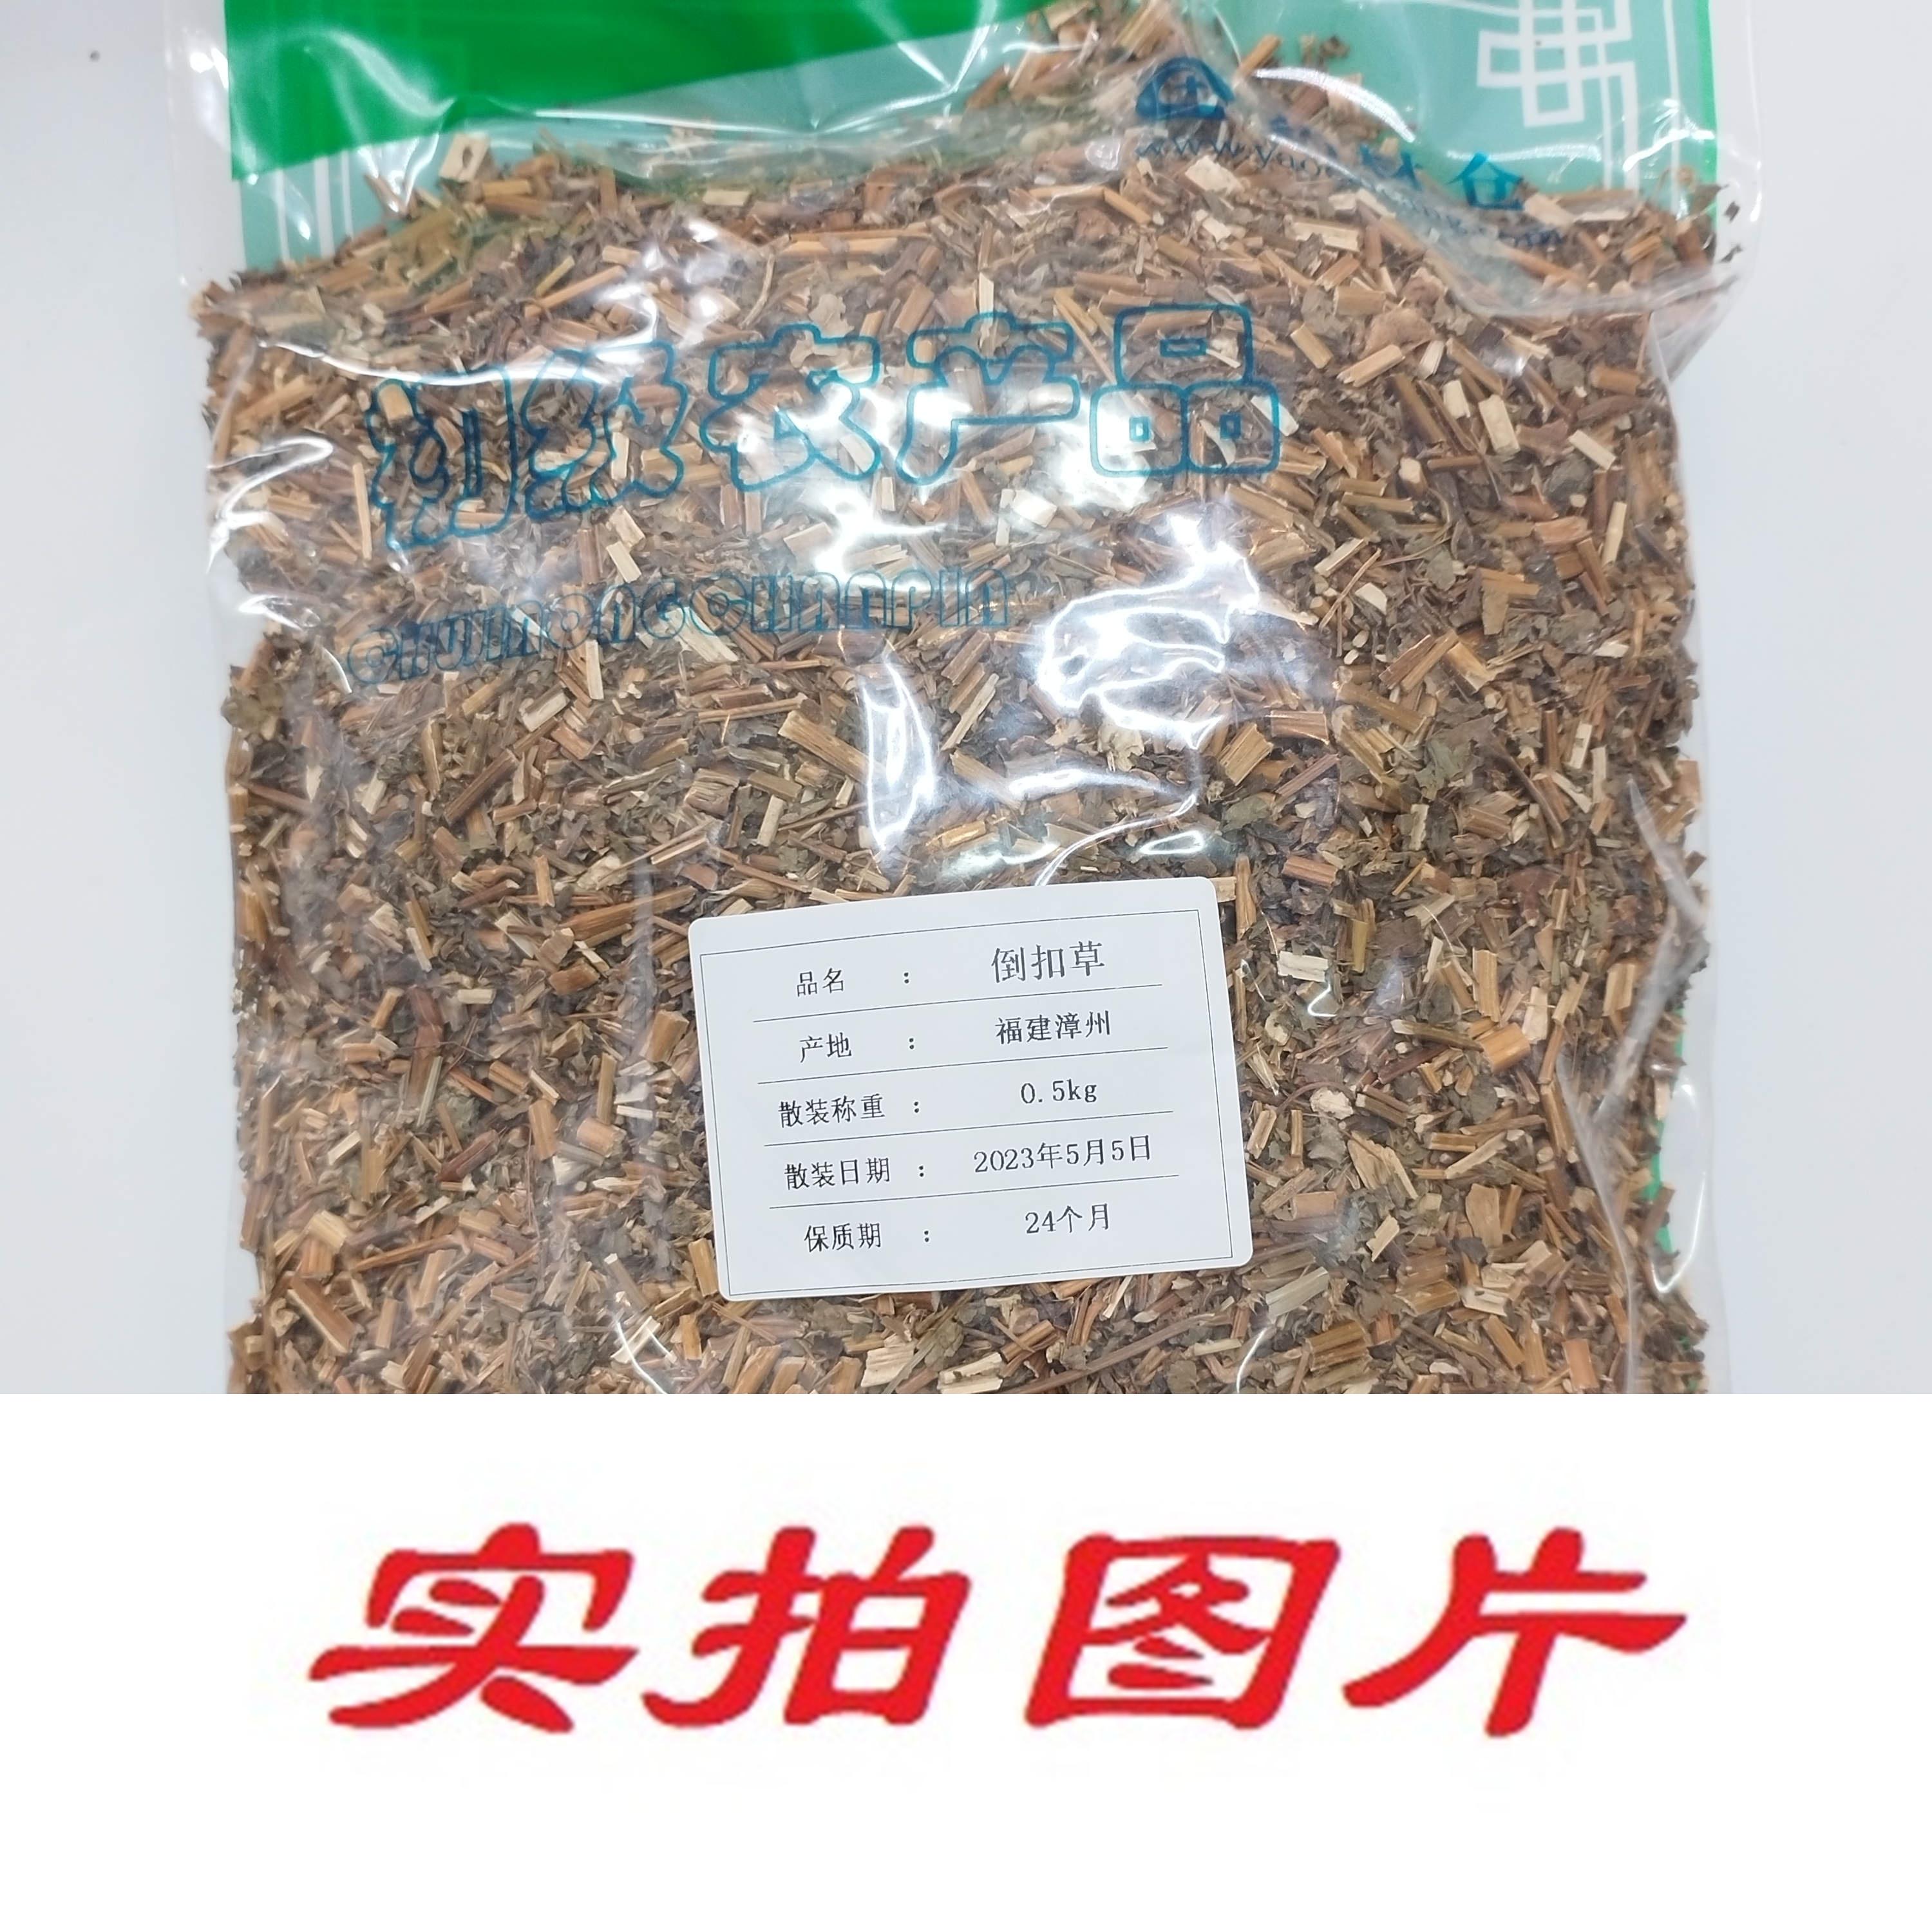 【】倒扣草0.5kg-农副产品